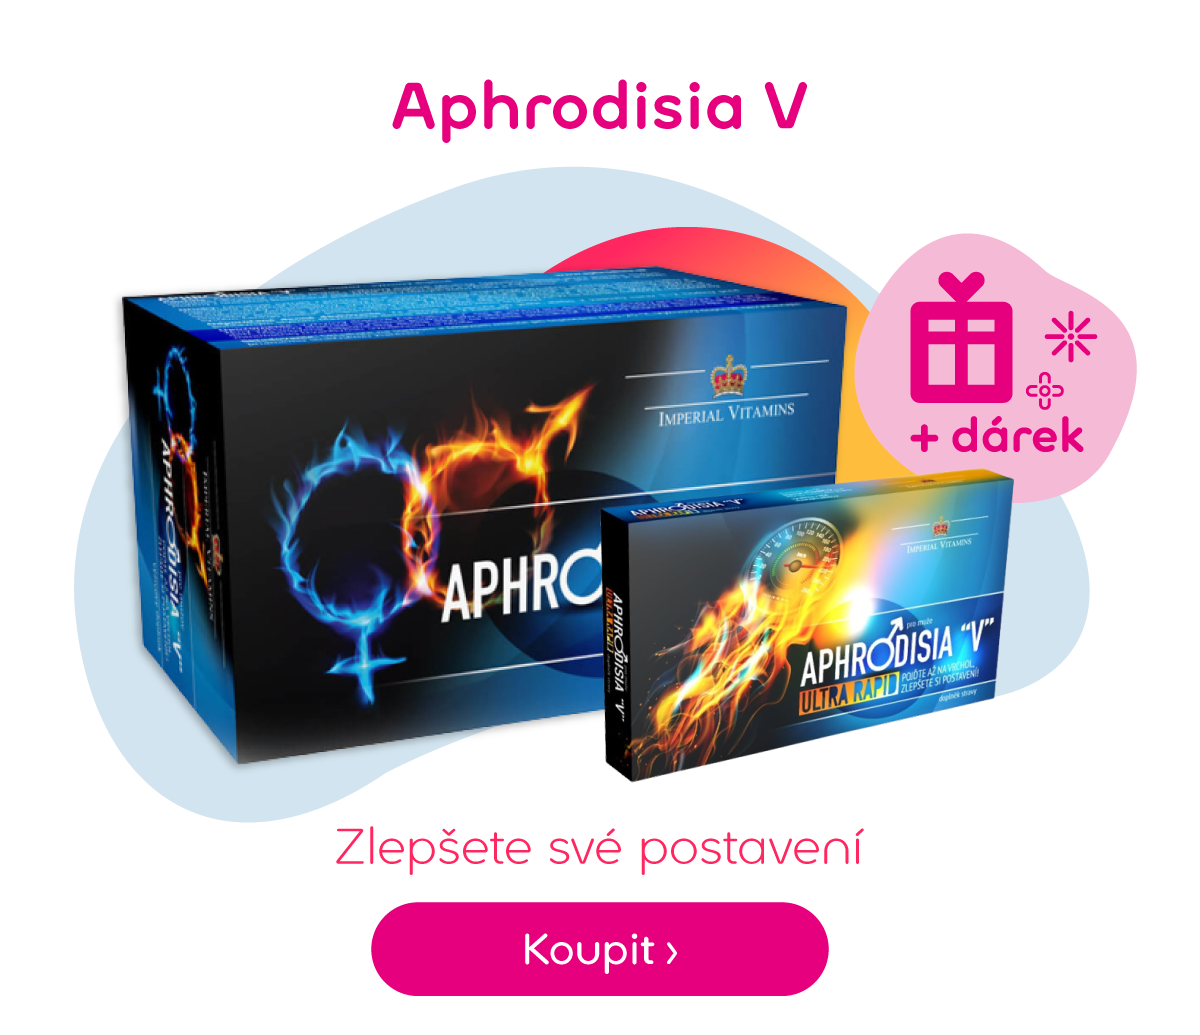 Aphrodisia V